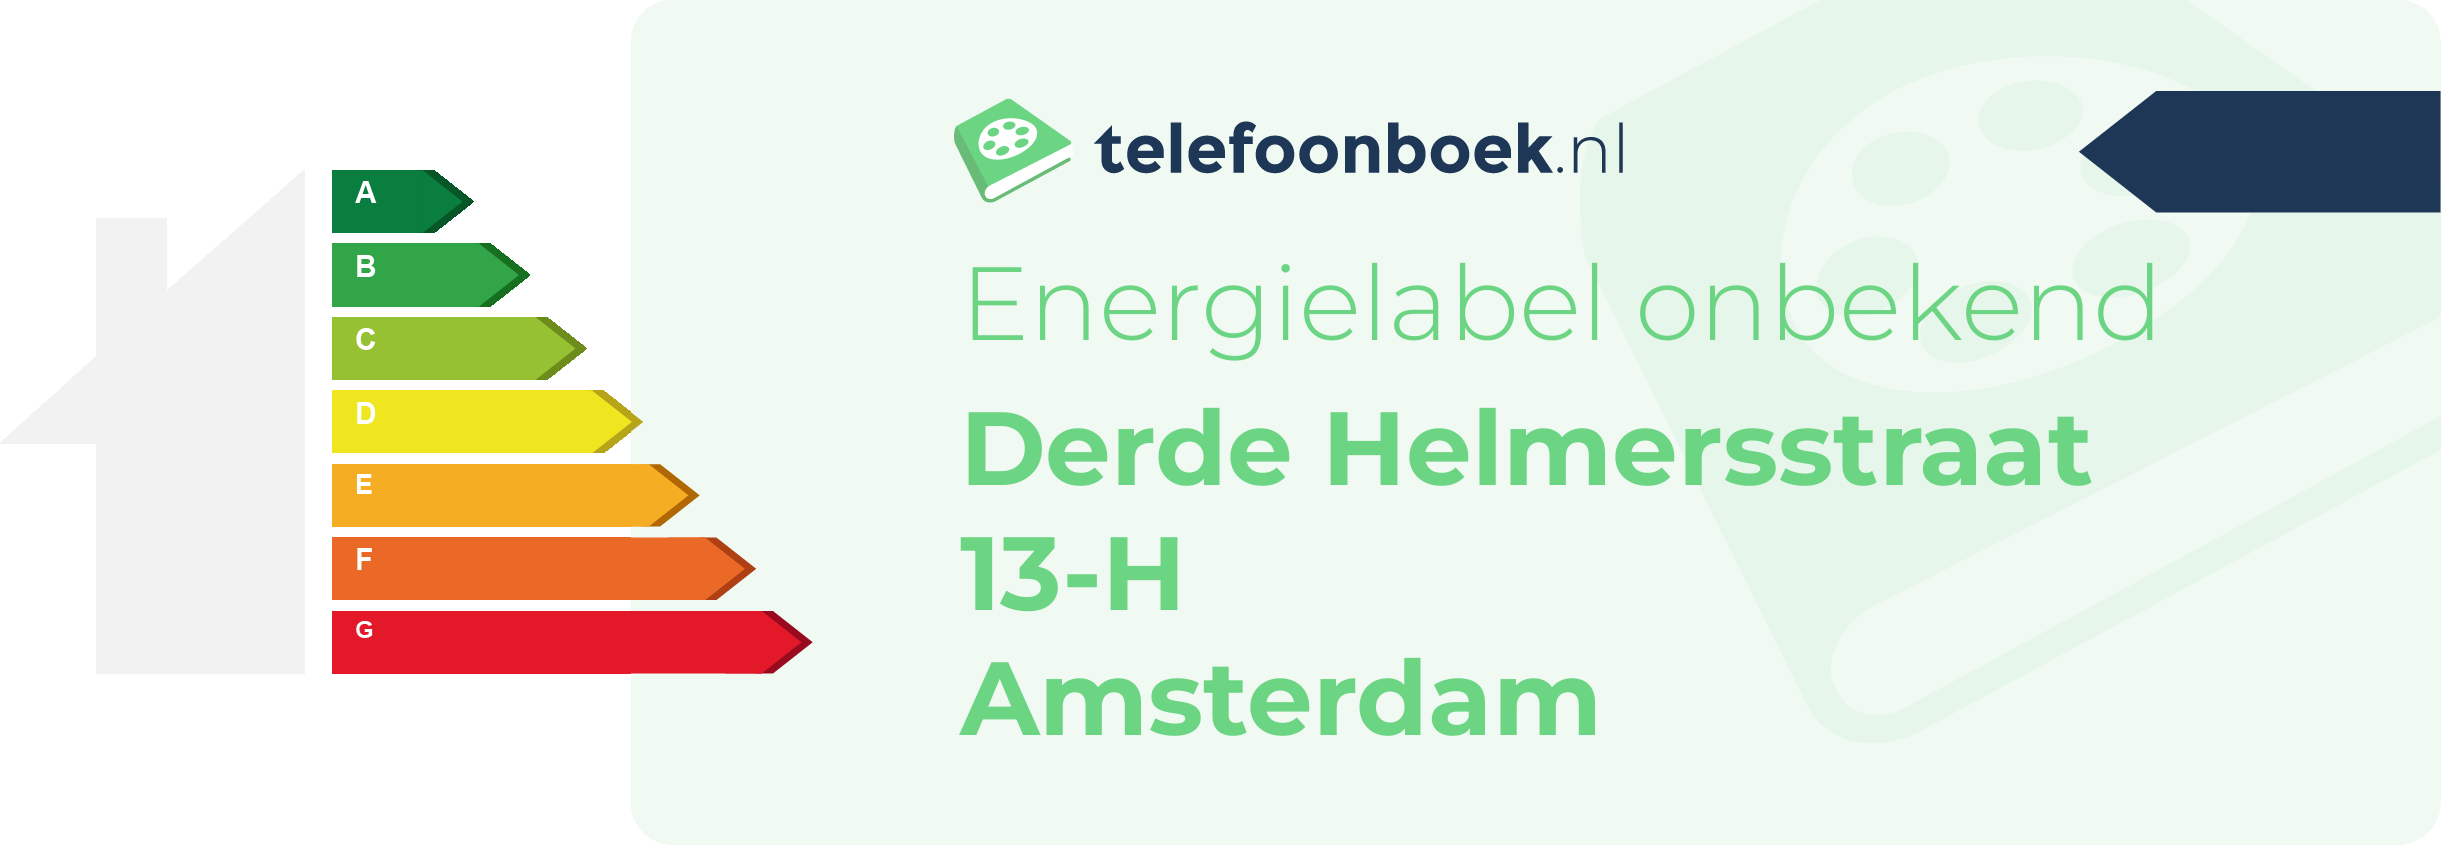 Energielabel Derde Helmersstraat 13-H Amsterdam